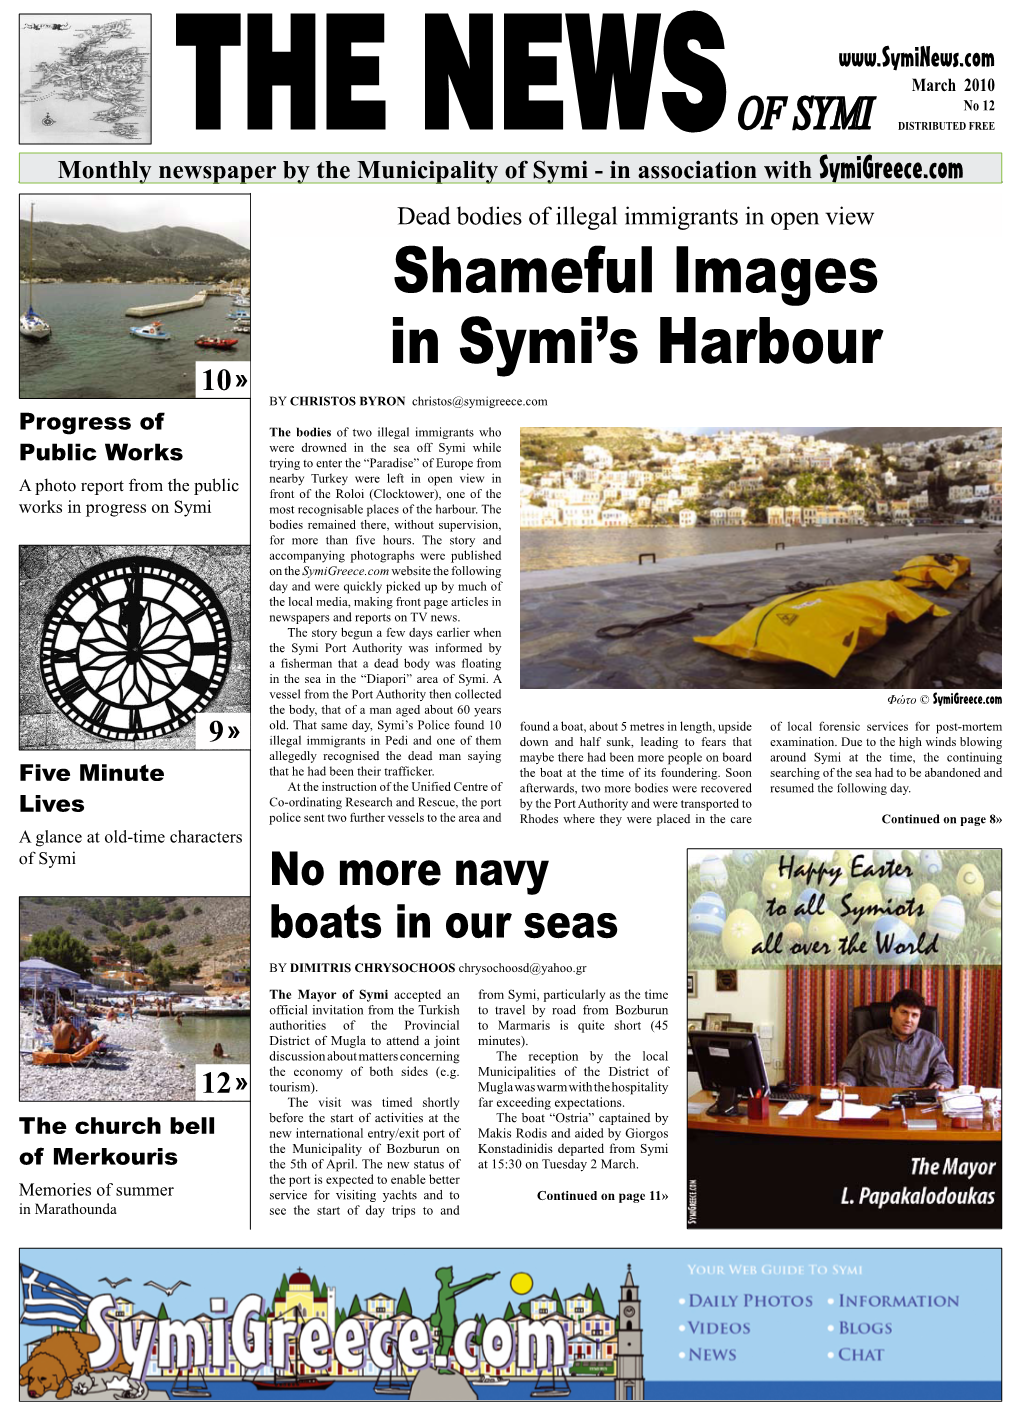 Shameful Images in Symi's Harbour